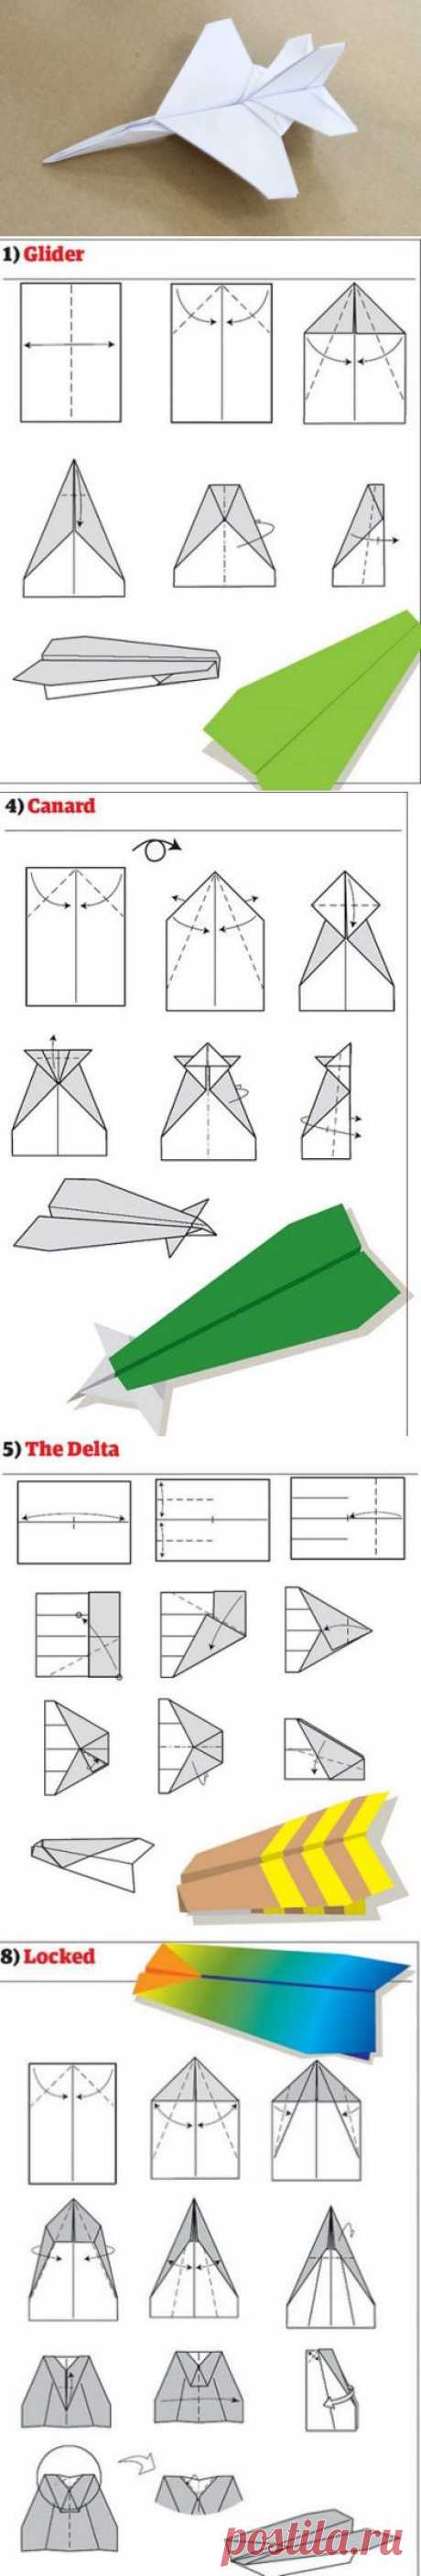 12 способов изготовления бумажных самолетиков =)